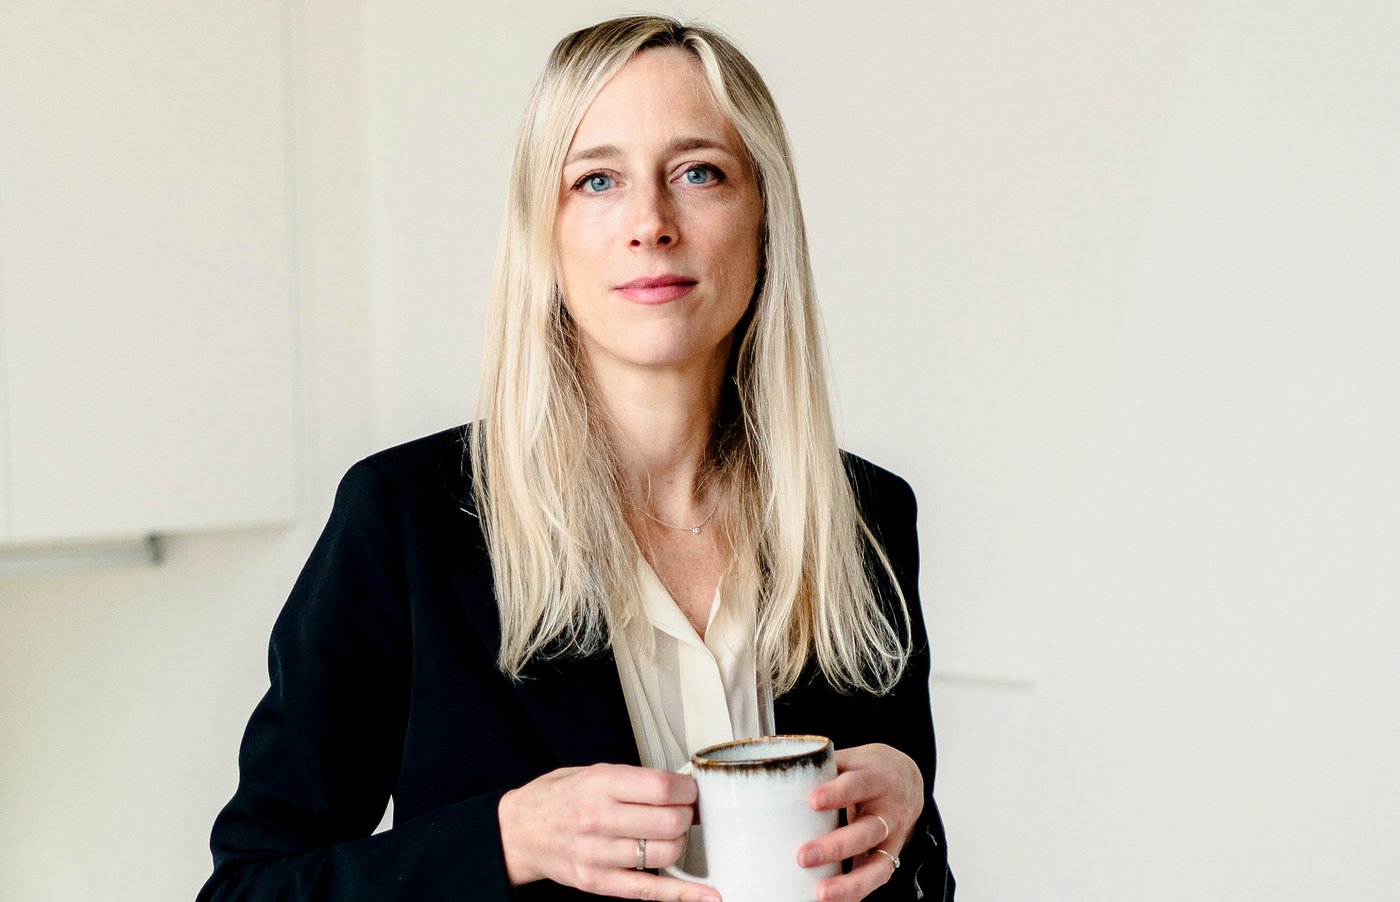 De digitale disruptie van ‘woman in legal tech’ Tina De Maere: “Ik wou écht met een radicaal andere aanpak komen”